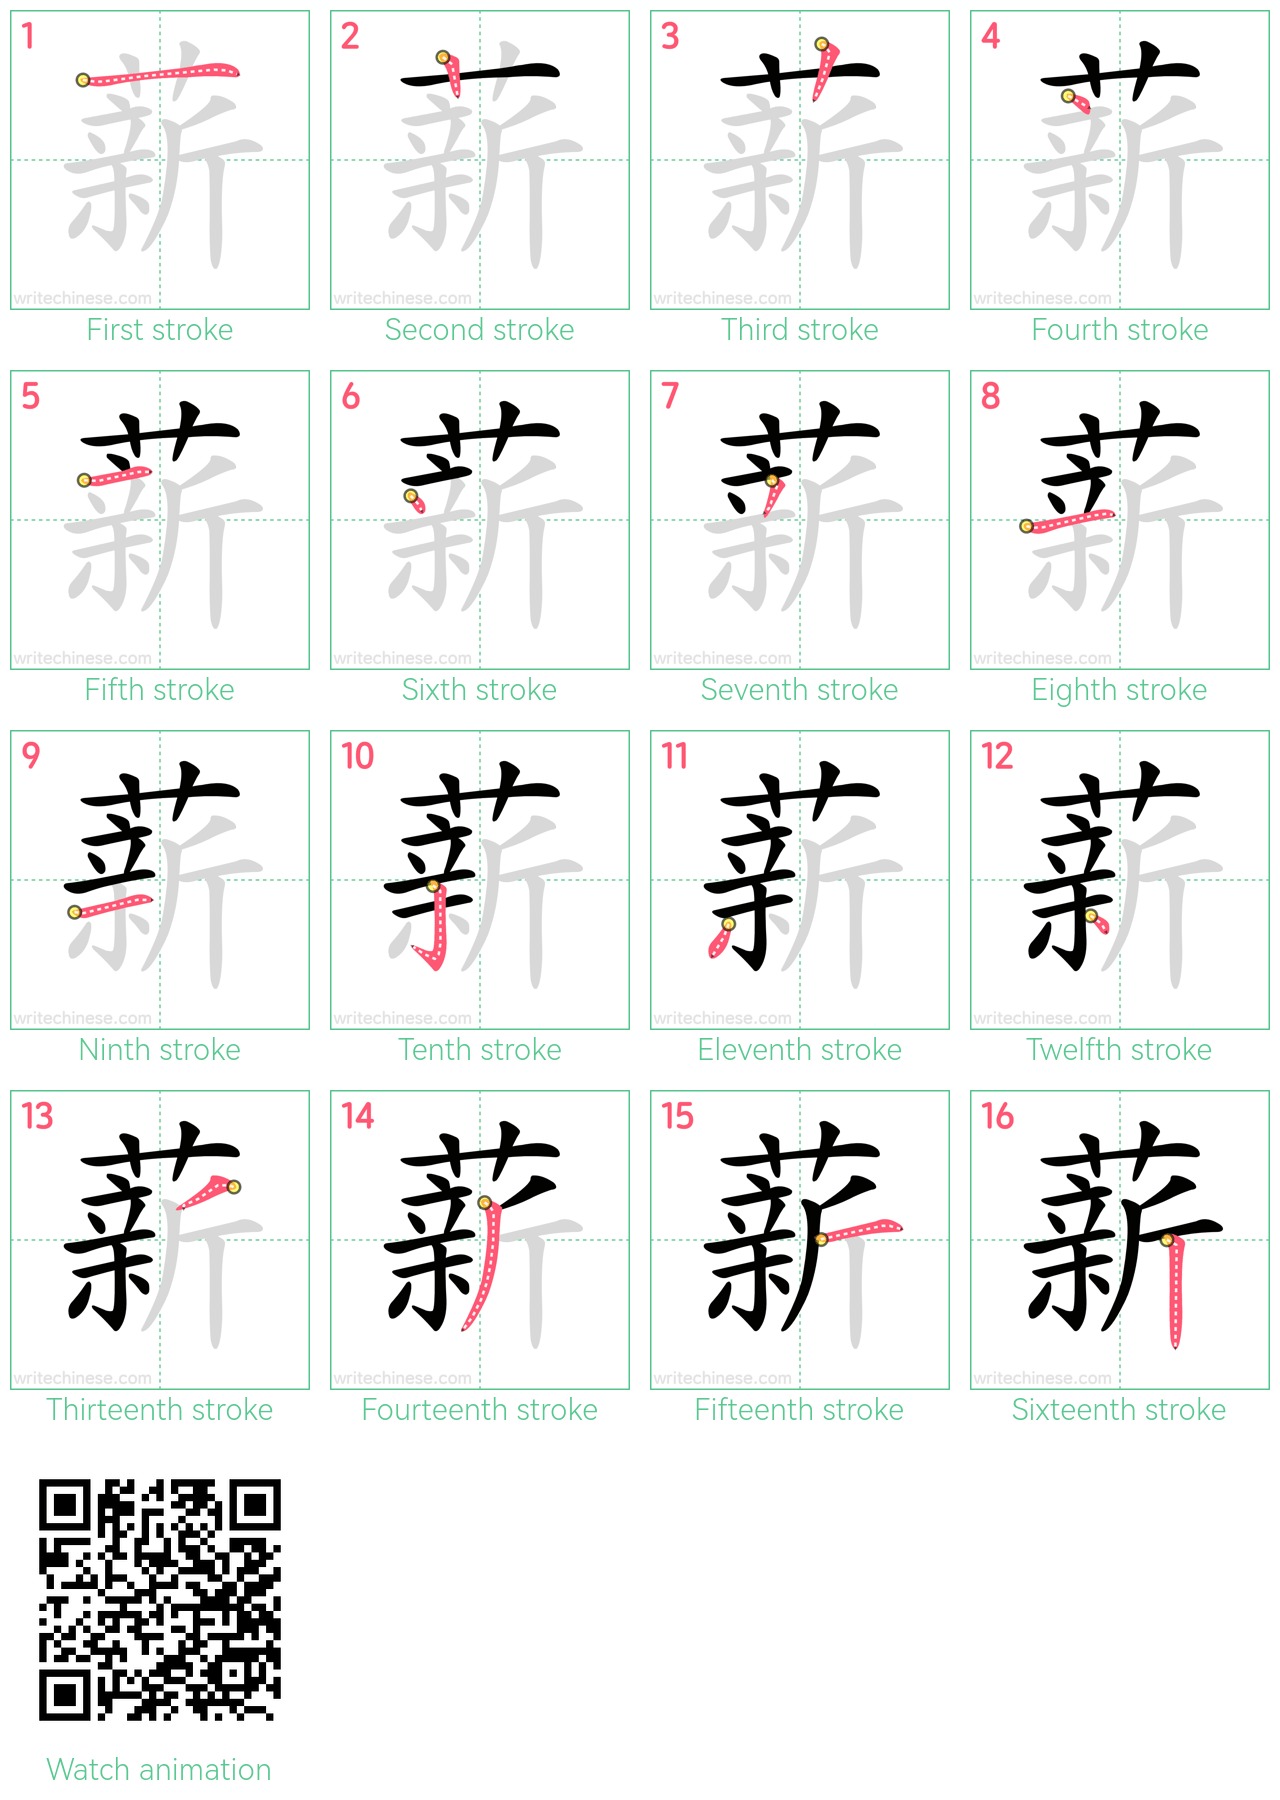 薪 step-by-step stroke order diagrams